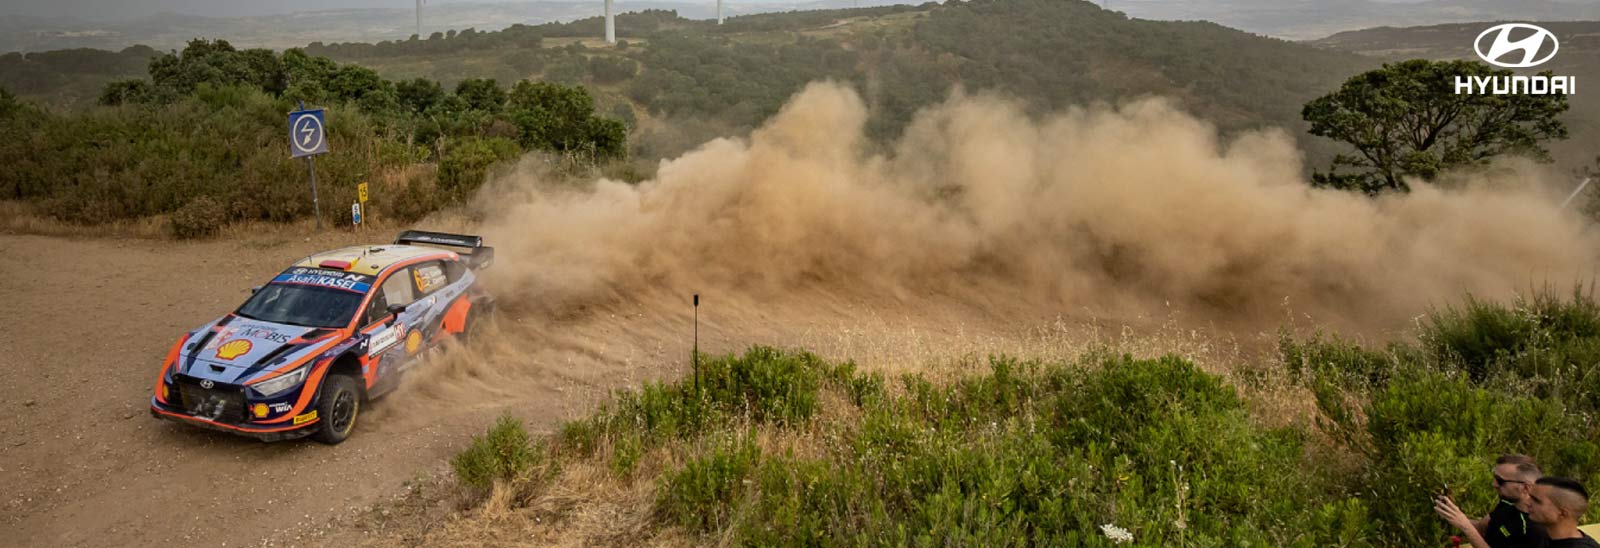 Auto Hyundai Motorsport levantando el polvo en camino de terracería